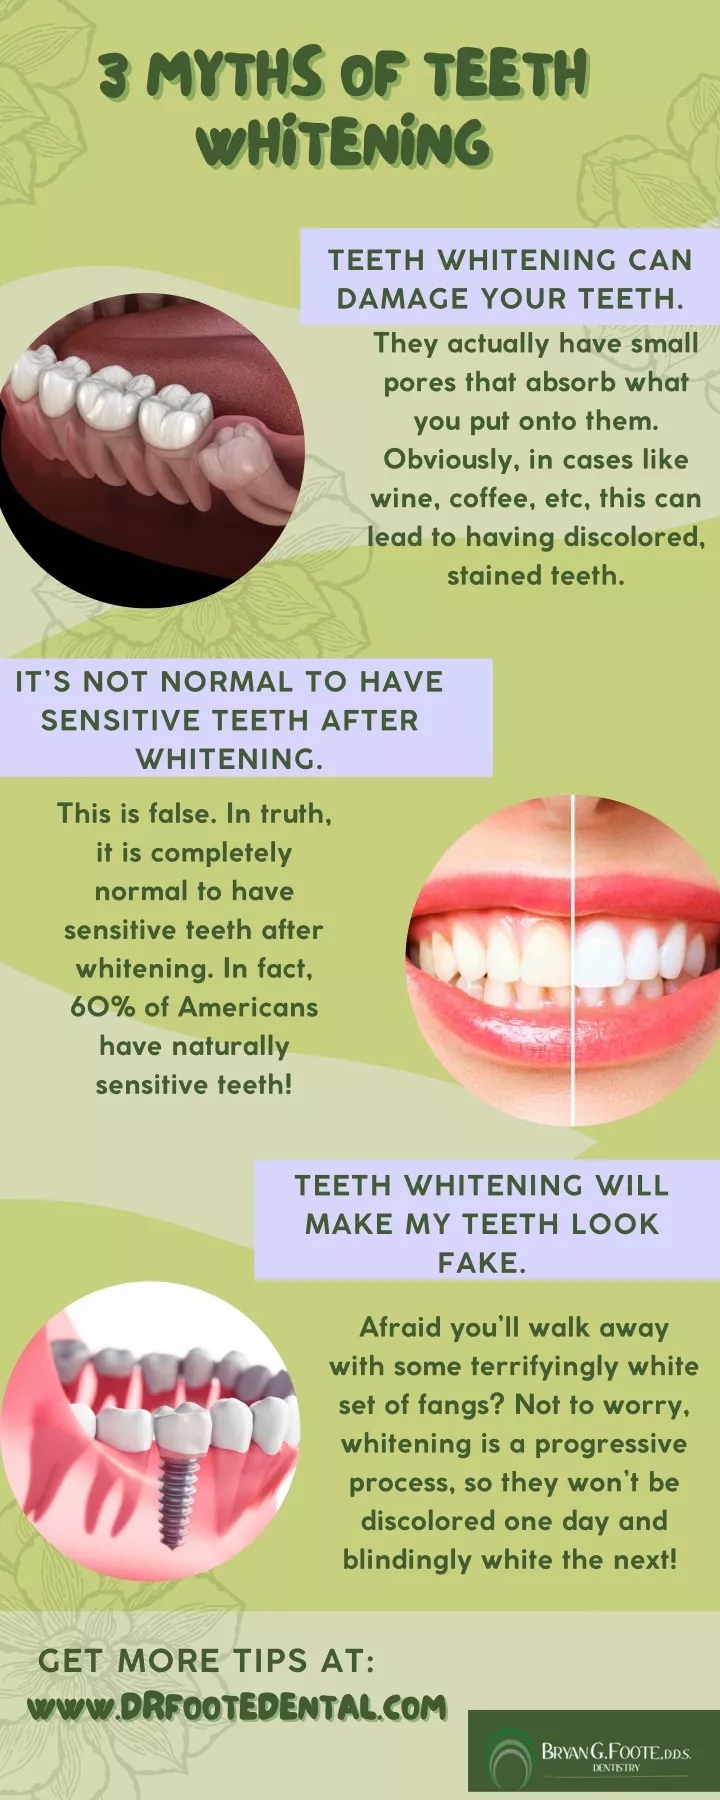 3 myths of teeth whitening